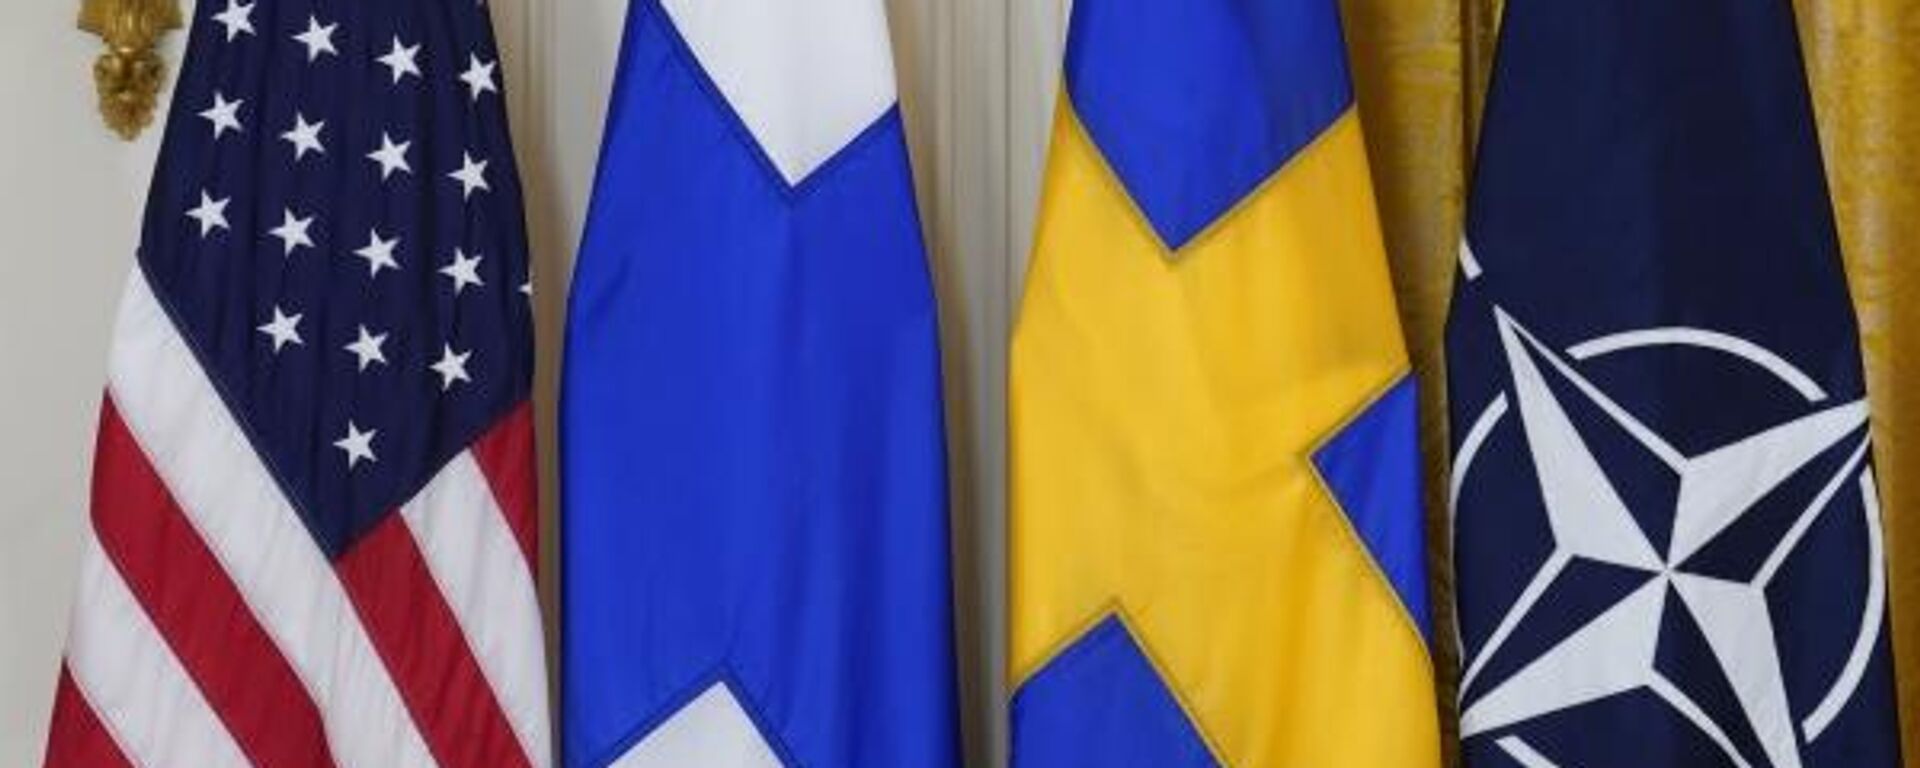 Bandeiras dos EUA, Finlândia, Suécia e da OTAN são retratadas antes da cerimônia de assinatura dos documentos endossando a adesão da Finlândia e da Suécia à OTAN, na Casa Branca, em Washington, Estados Unidos, 8 de novembro de 2022 - Sputnik Brasil, 1920, 11.11.2022